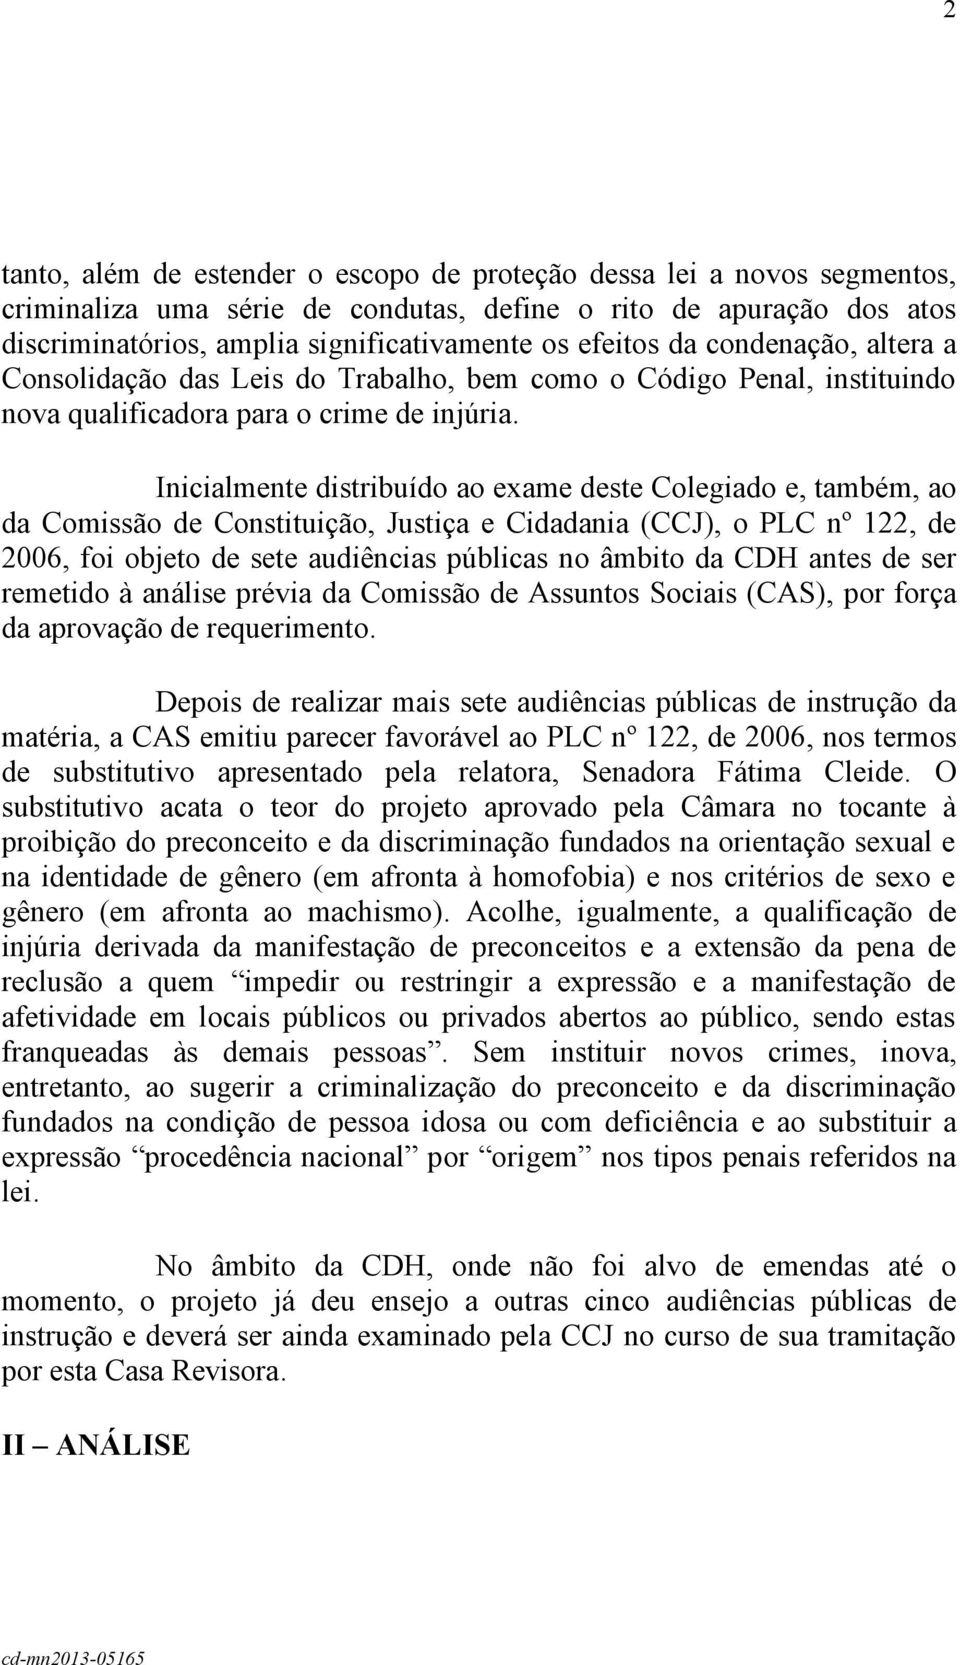 Inicialmente distribuído ao exame deste Colegiado e, também, ao da Comissão de Constituição, Justiça e Cidadania (CCJ), o PLC nº 122, de 2006, foi objeto de sete audiências públicas no âmbito da CDH